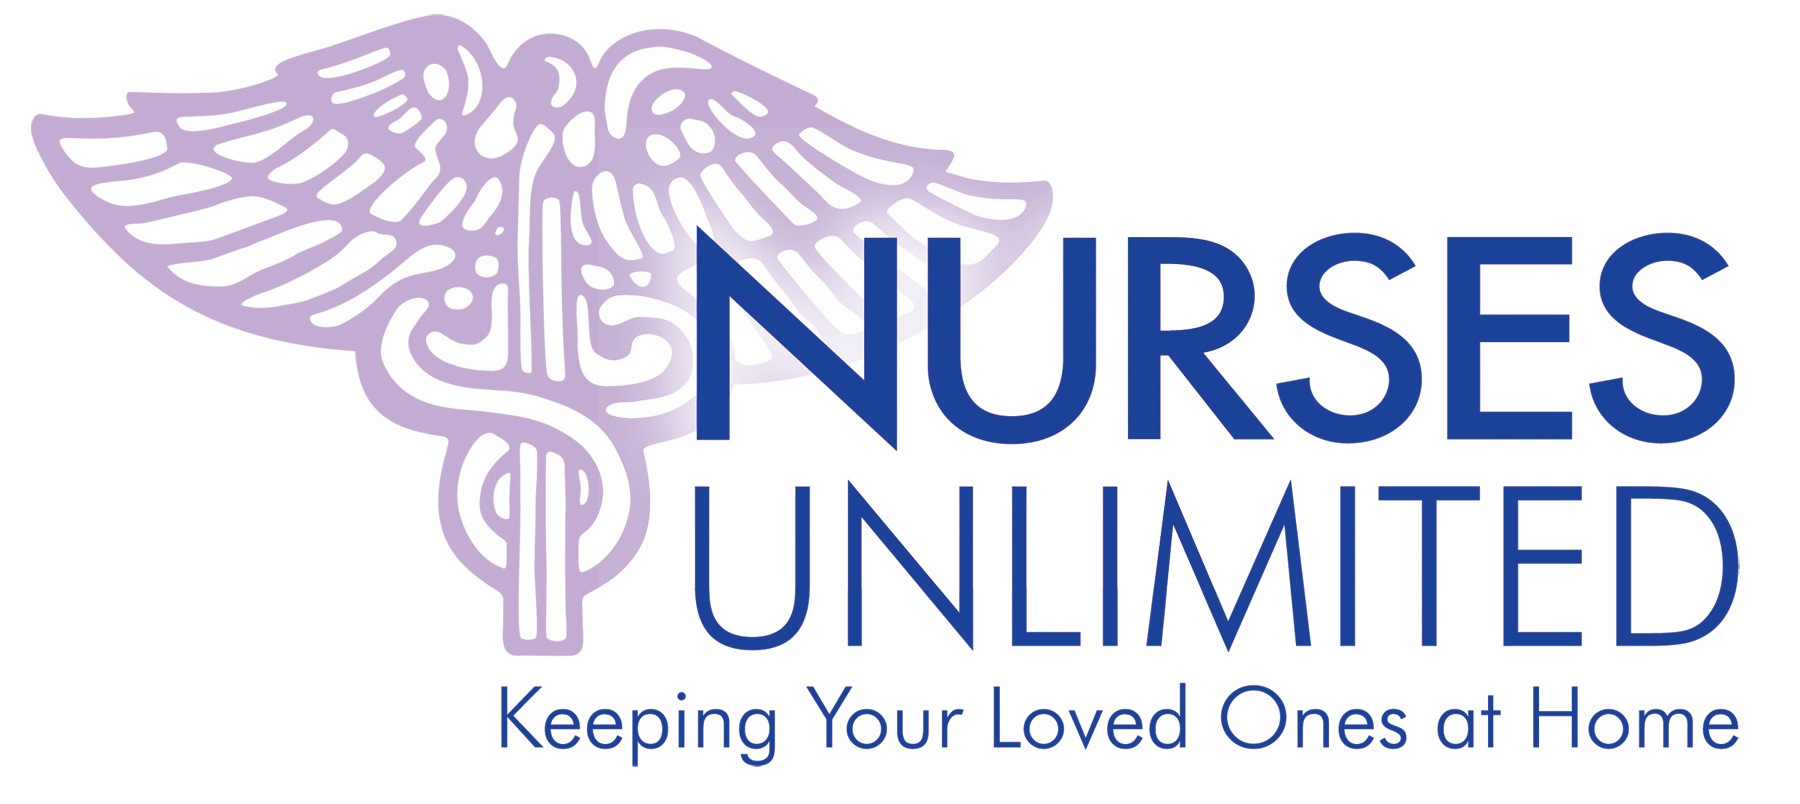 Nurses Unlimited